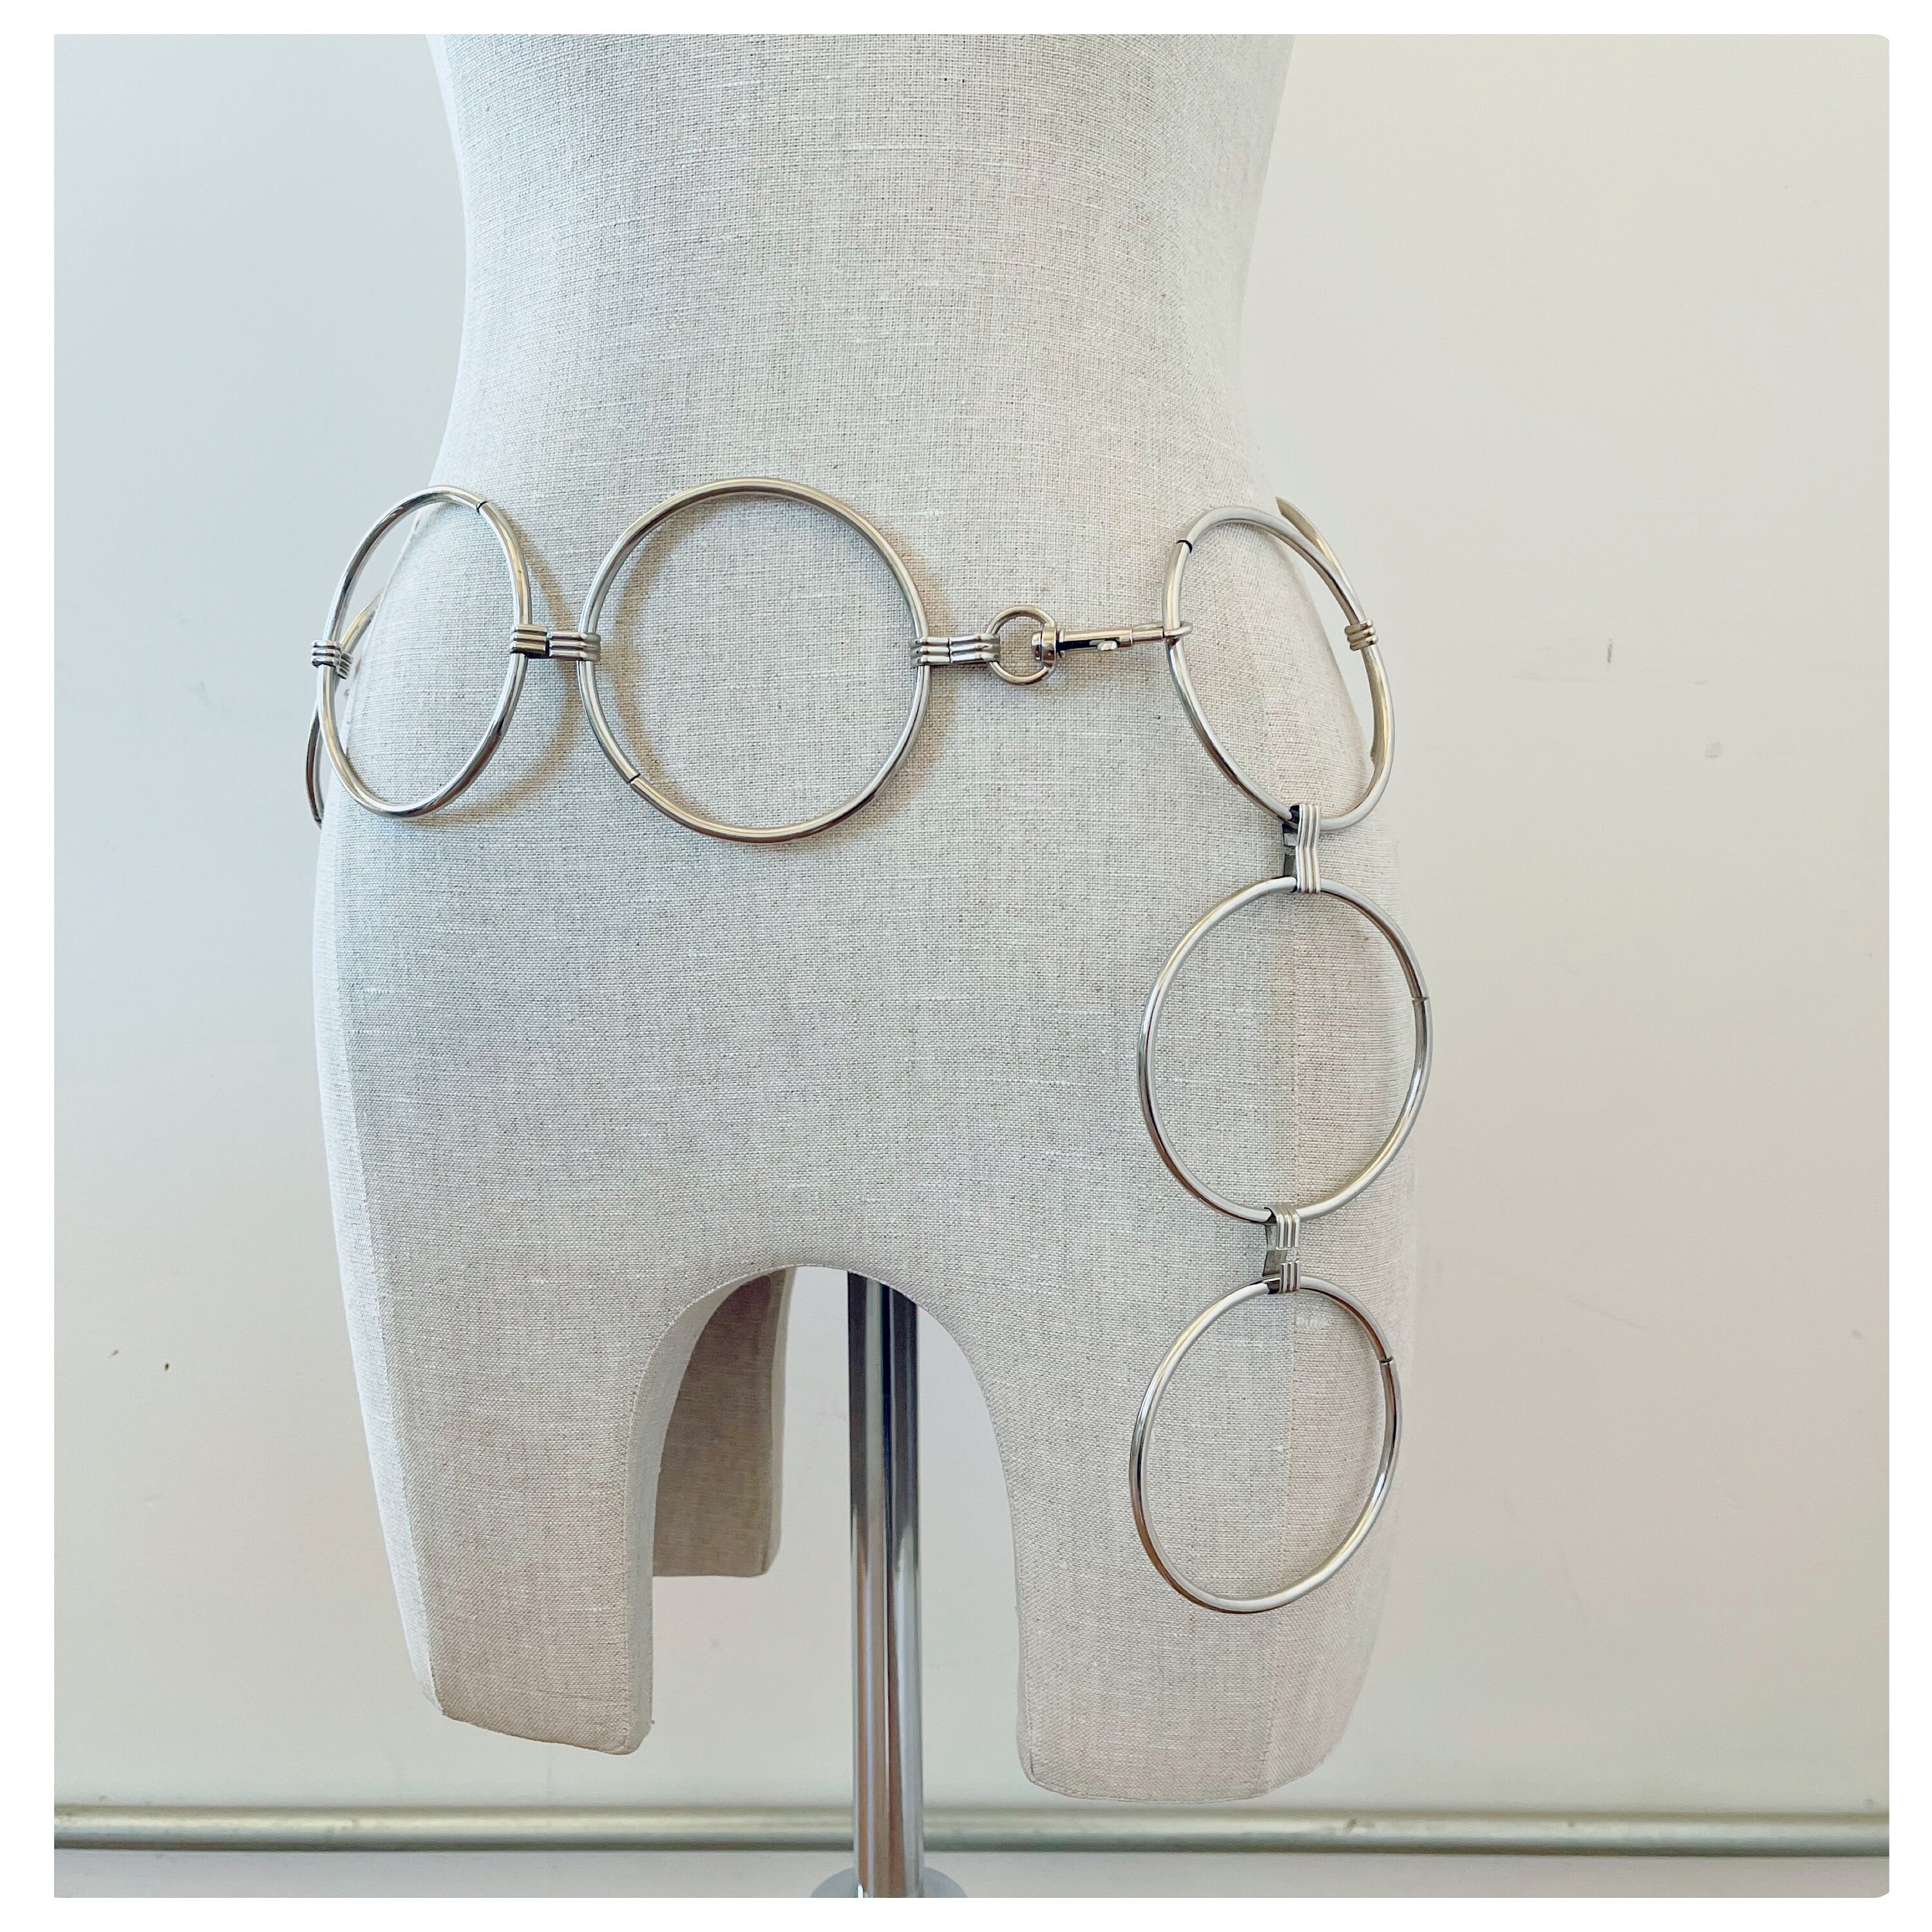 60s Chain Belt - Goldtone Medallion Disk - 1960s Hip Belt - Adjustable –  Vintage Vixen Clothing